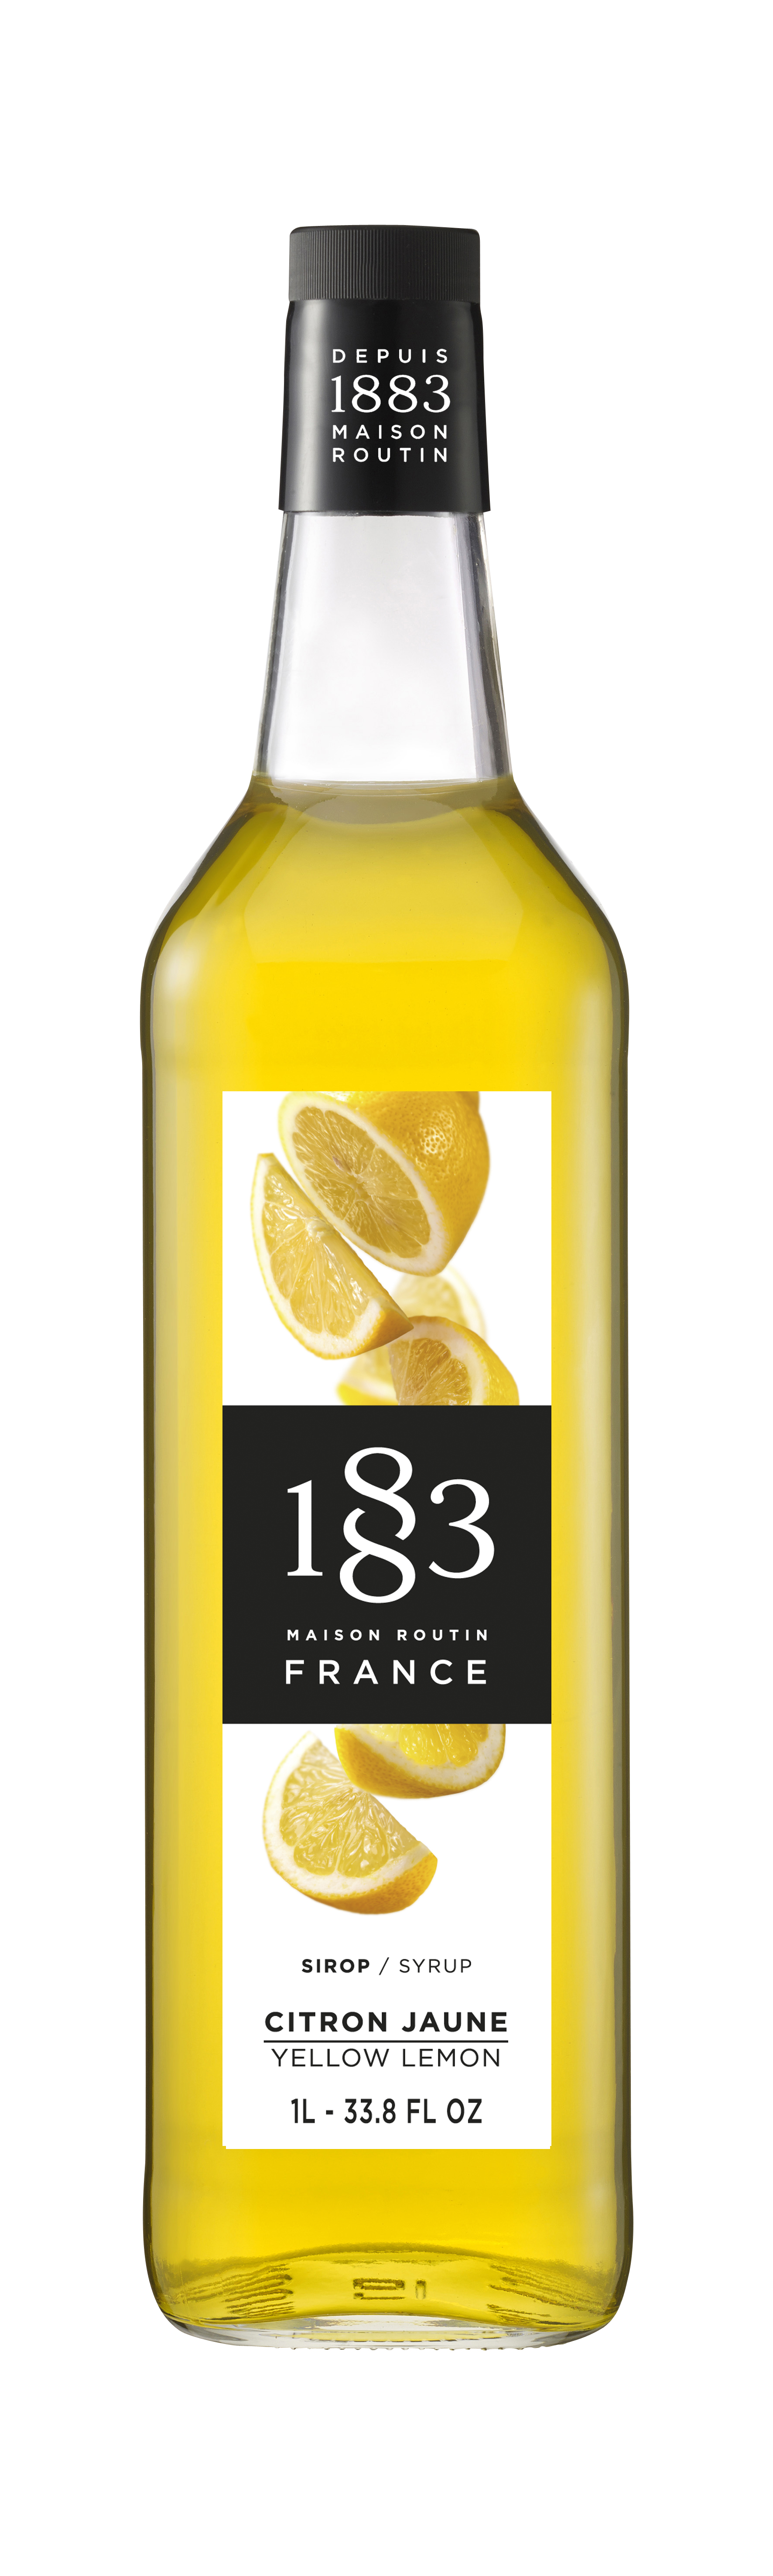 картинка Лимон желтый 1л сироп 1883 Рутин 